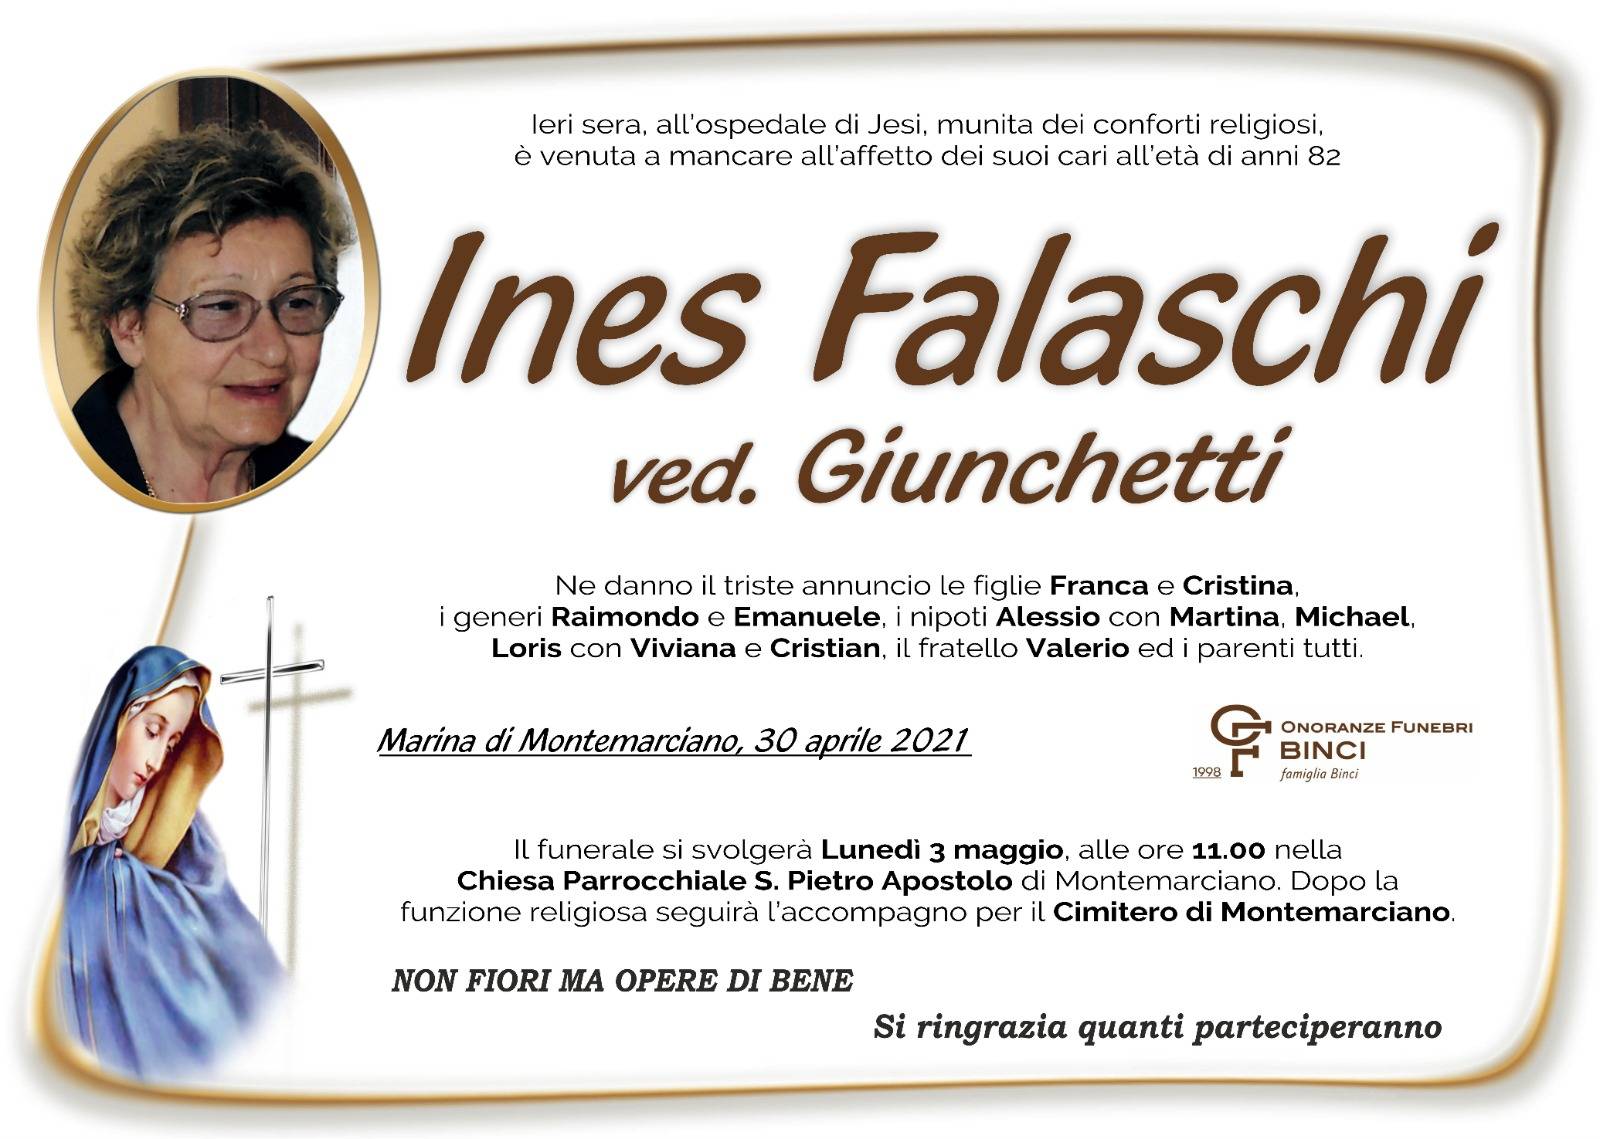 Ines Falaschi